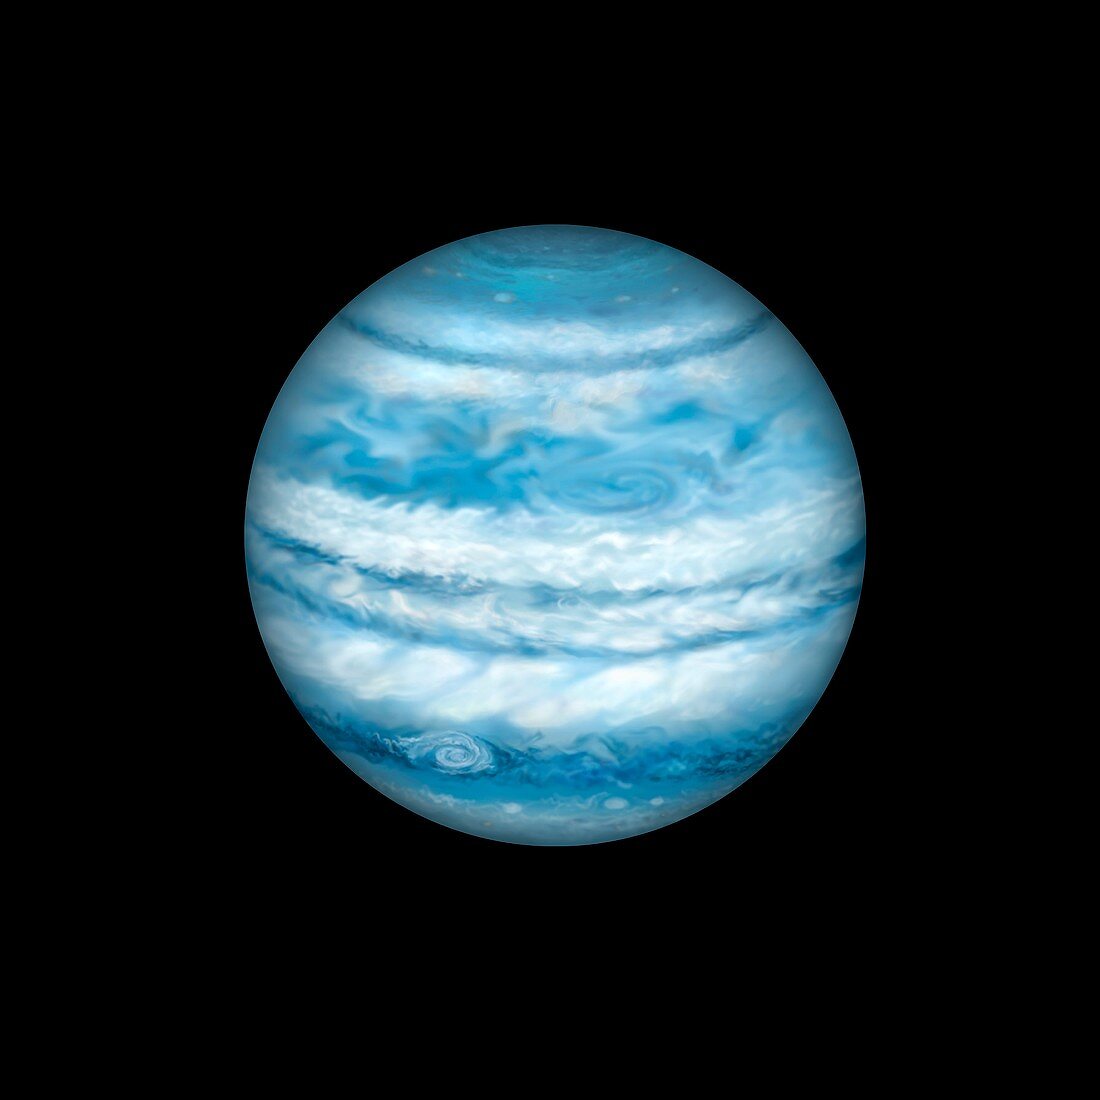 Kepler-1647 b exoplanet,illustration